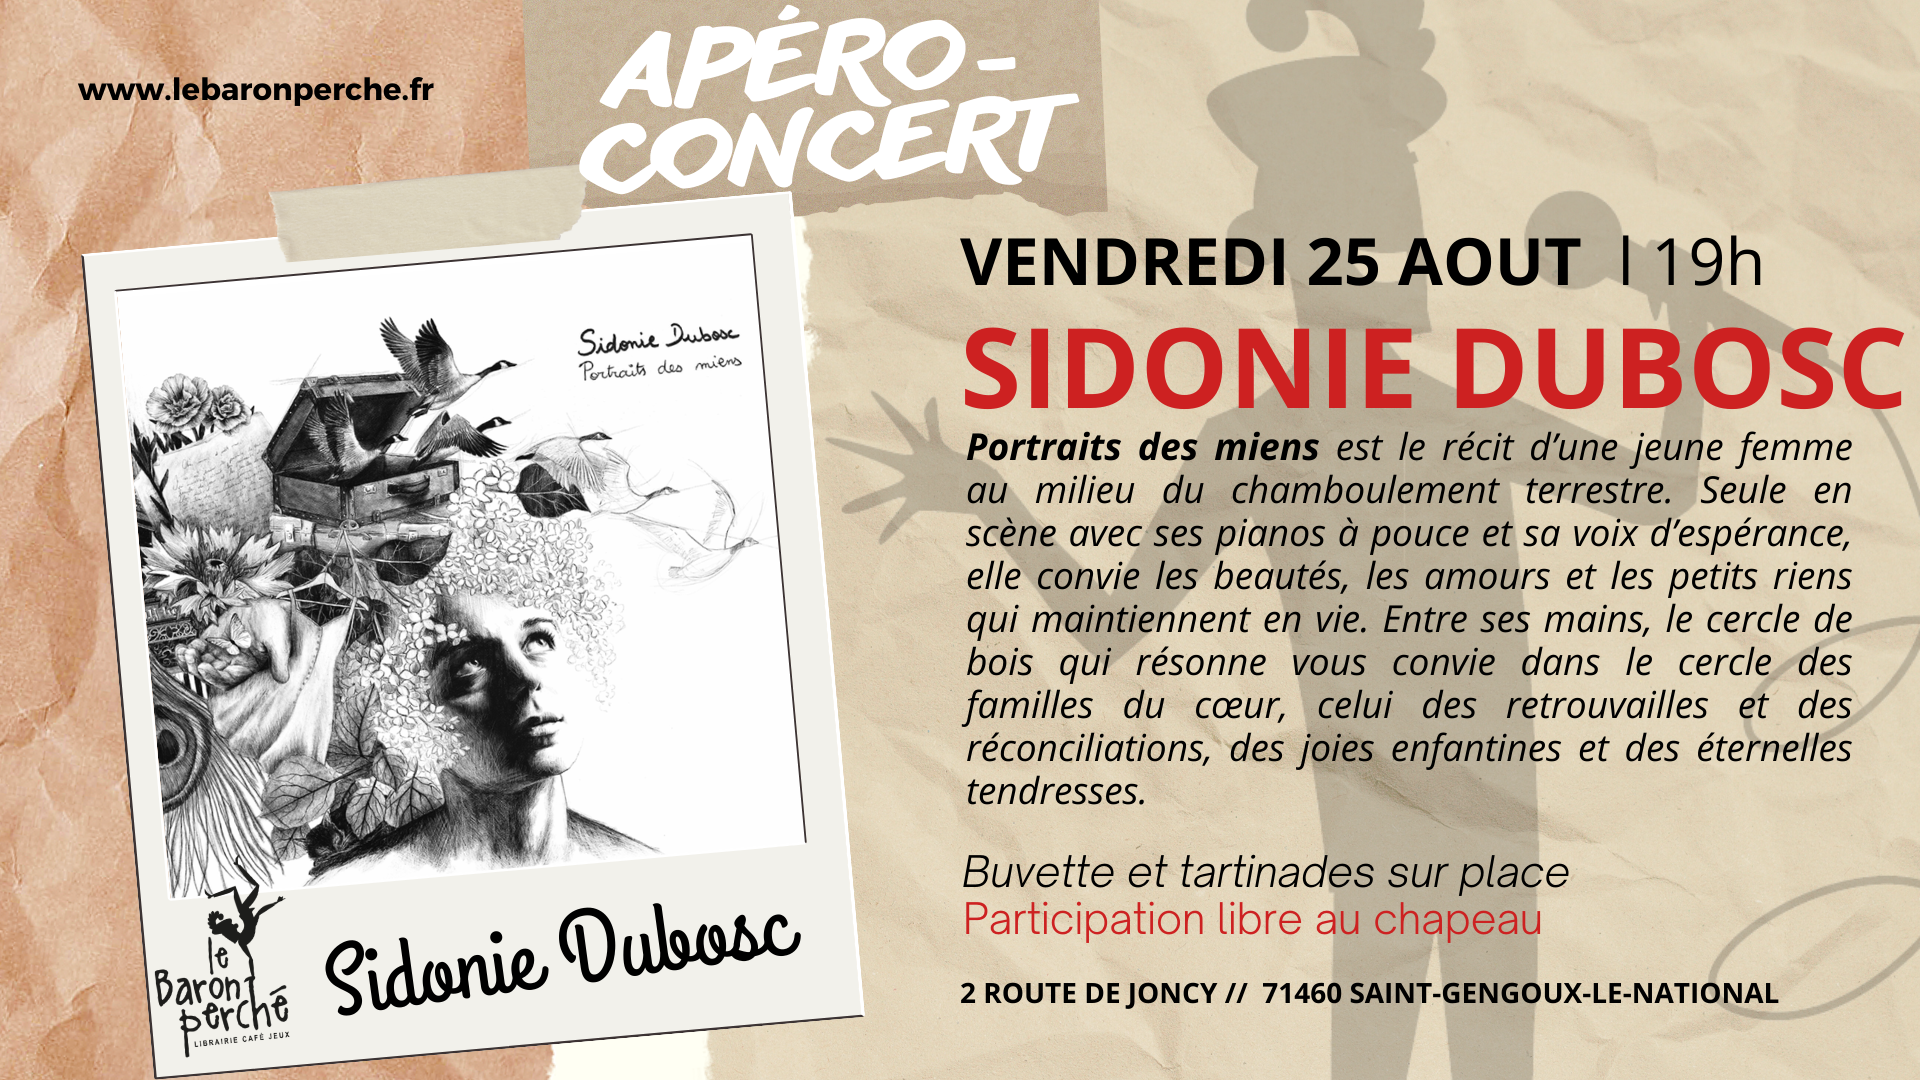 Apéro-concert avec Sidonie Dubosc